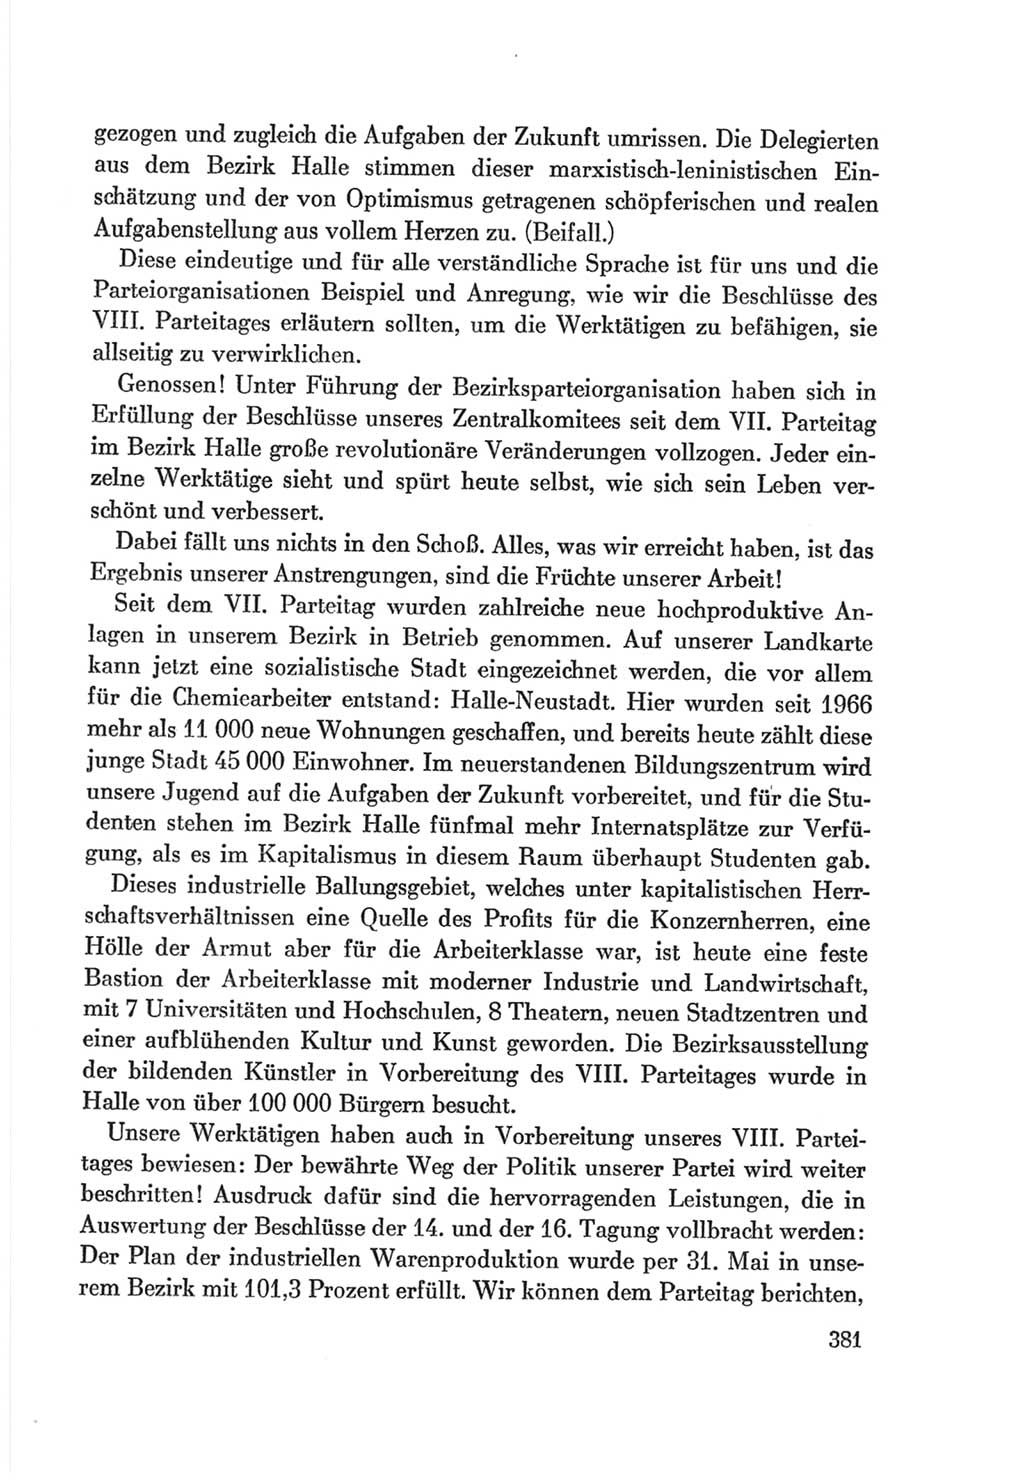 Protokoll der Verhandlungen des Ⅷ. Parteitages der Sozialistischen Einheitspartei Deutschlands (SED) [Deutsche Demokratische Republik (DDR)] 1971, Band 1, Seite 381 (Prot. Verh. Ⅷ. PT SED DDR 1971, Bd. 1, S. 381)